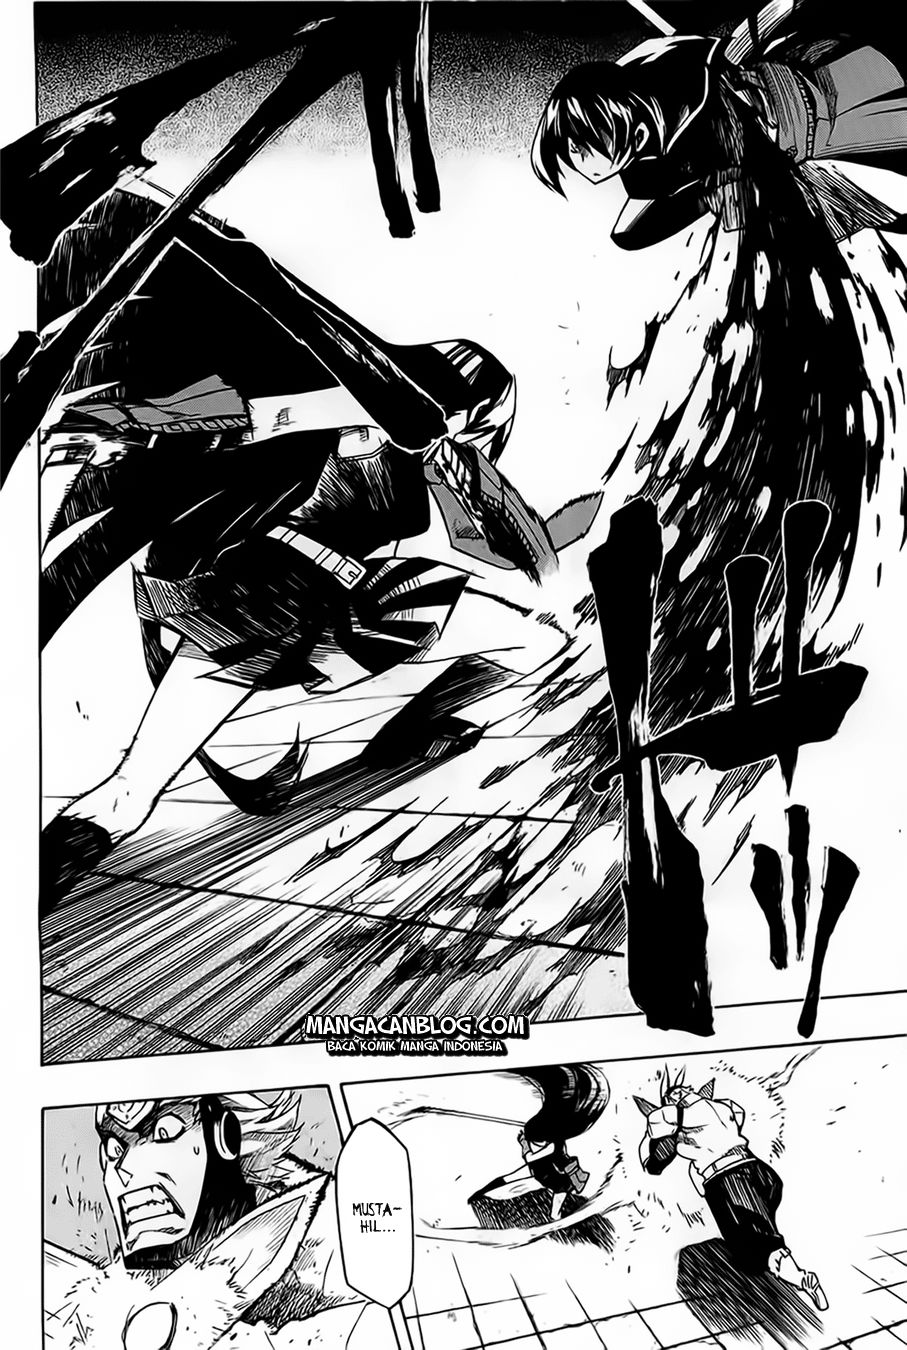 Akame Ga Kill! Chapter 6